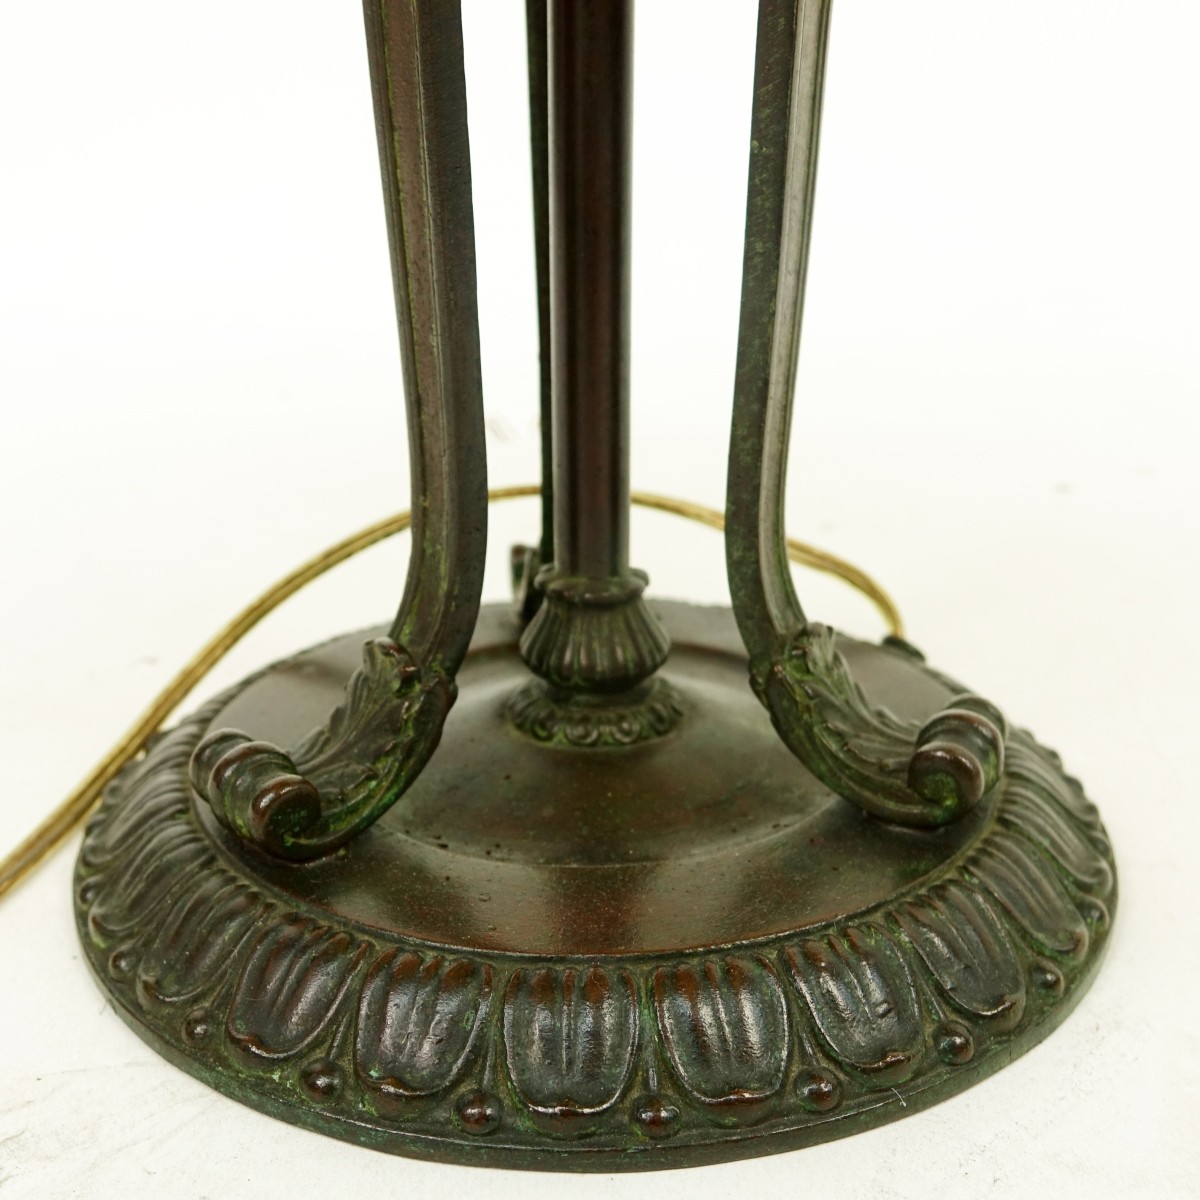 Handel Lamp